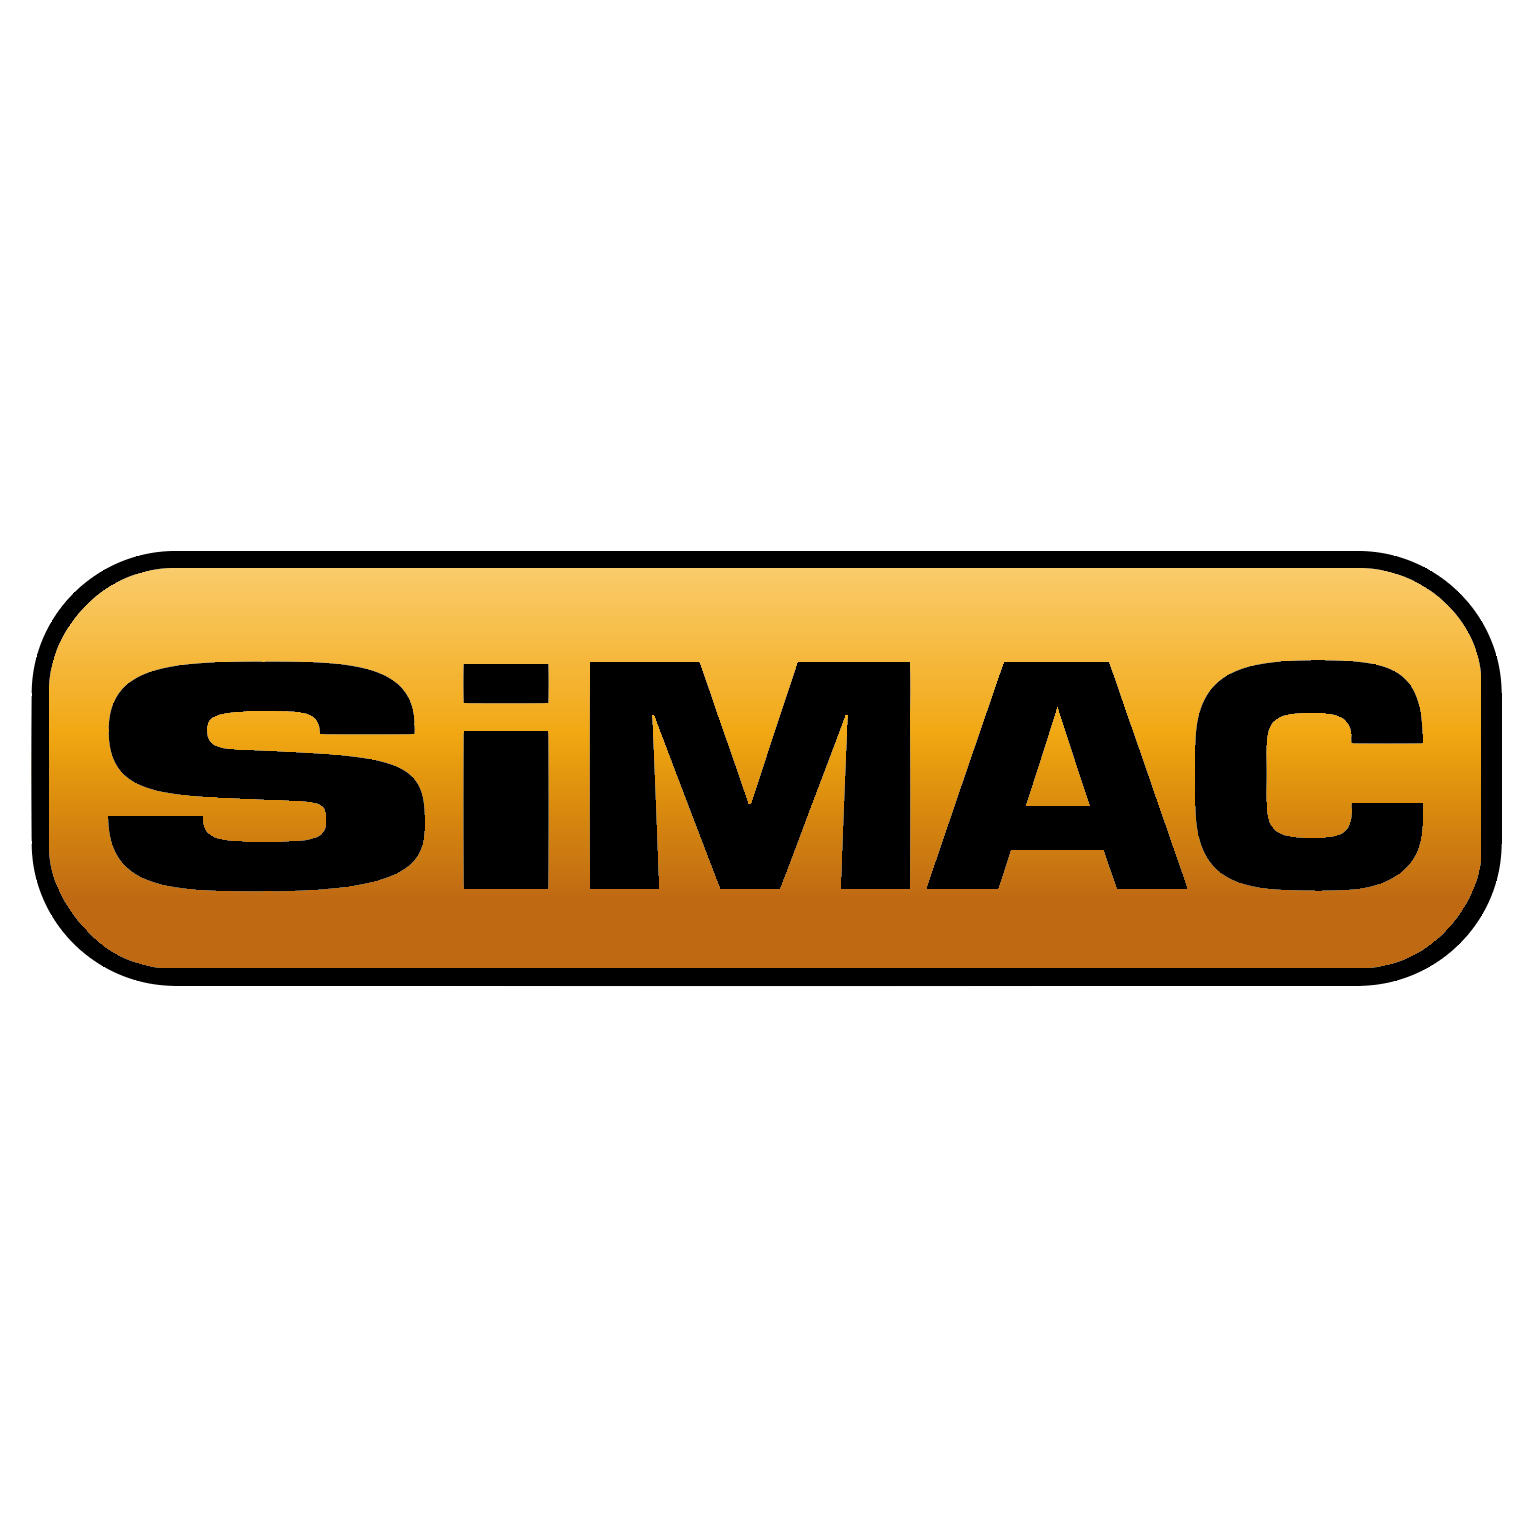 SIMAC SA Logo